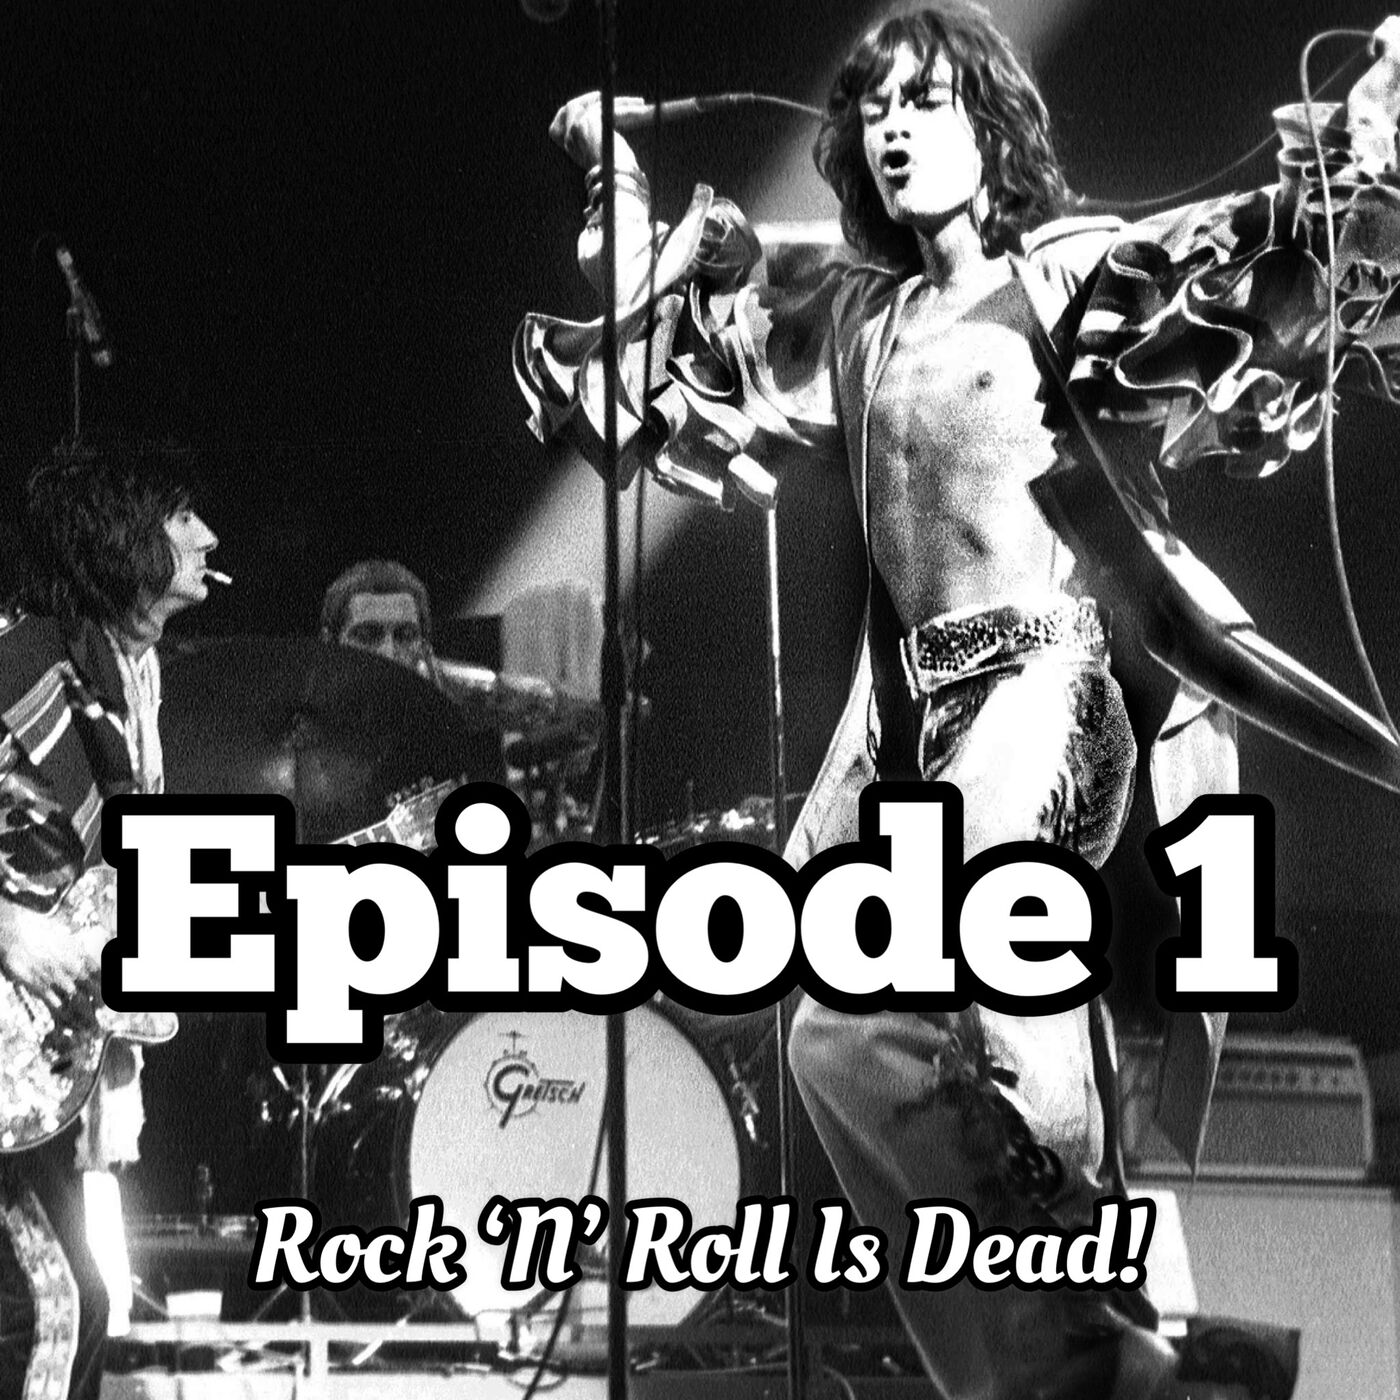 1. Rock ’N’ Roll Is Dead!